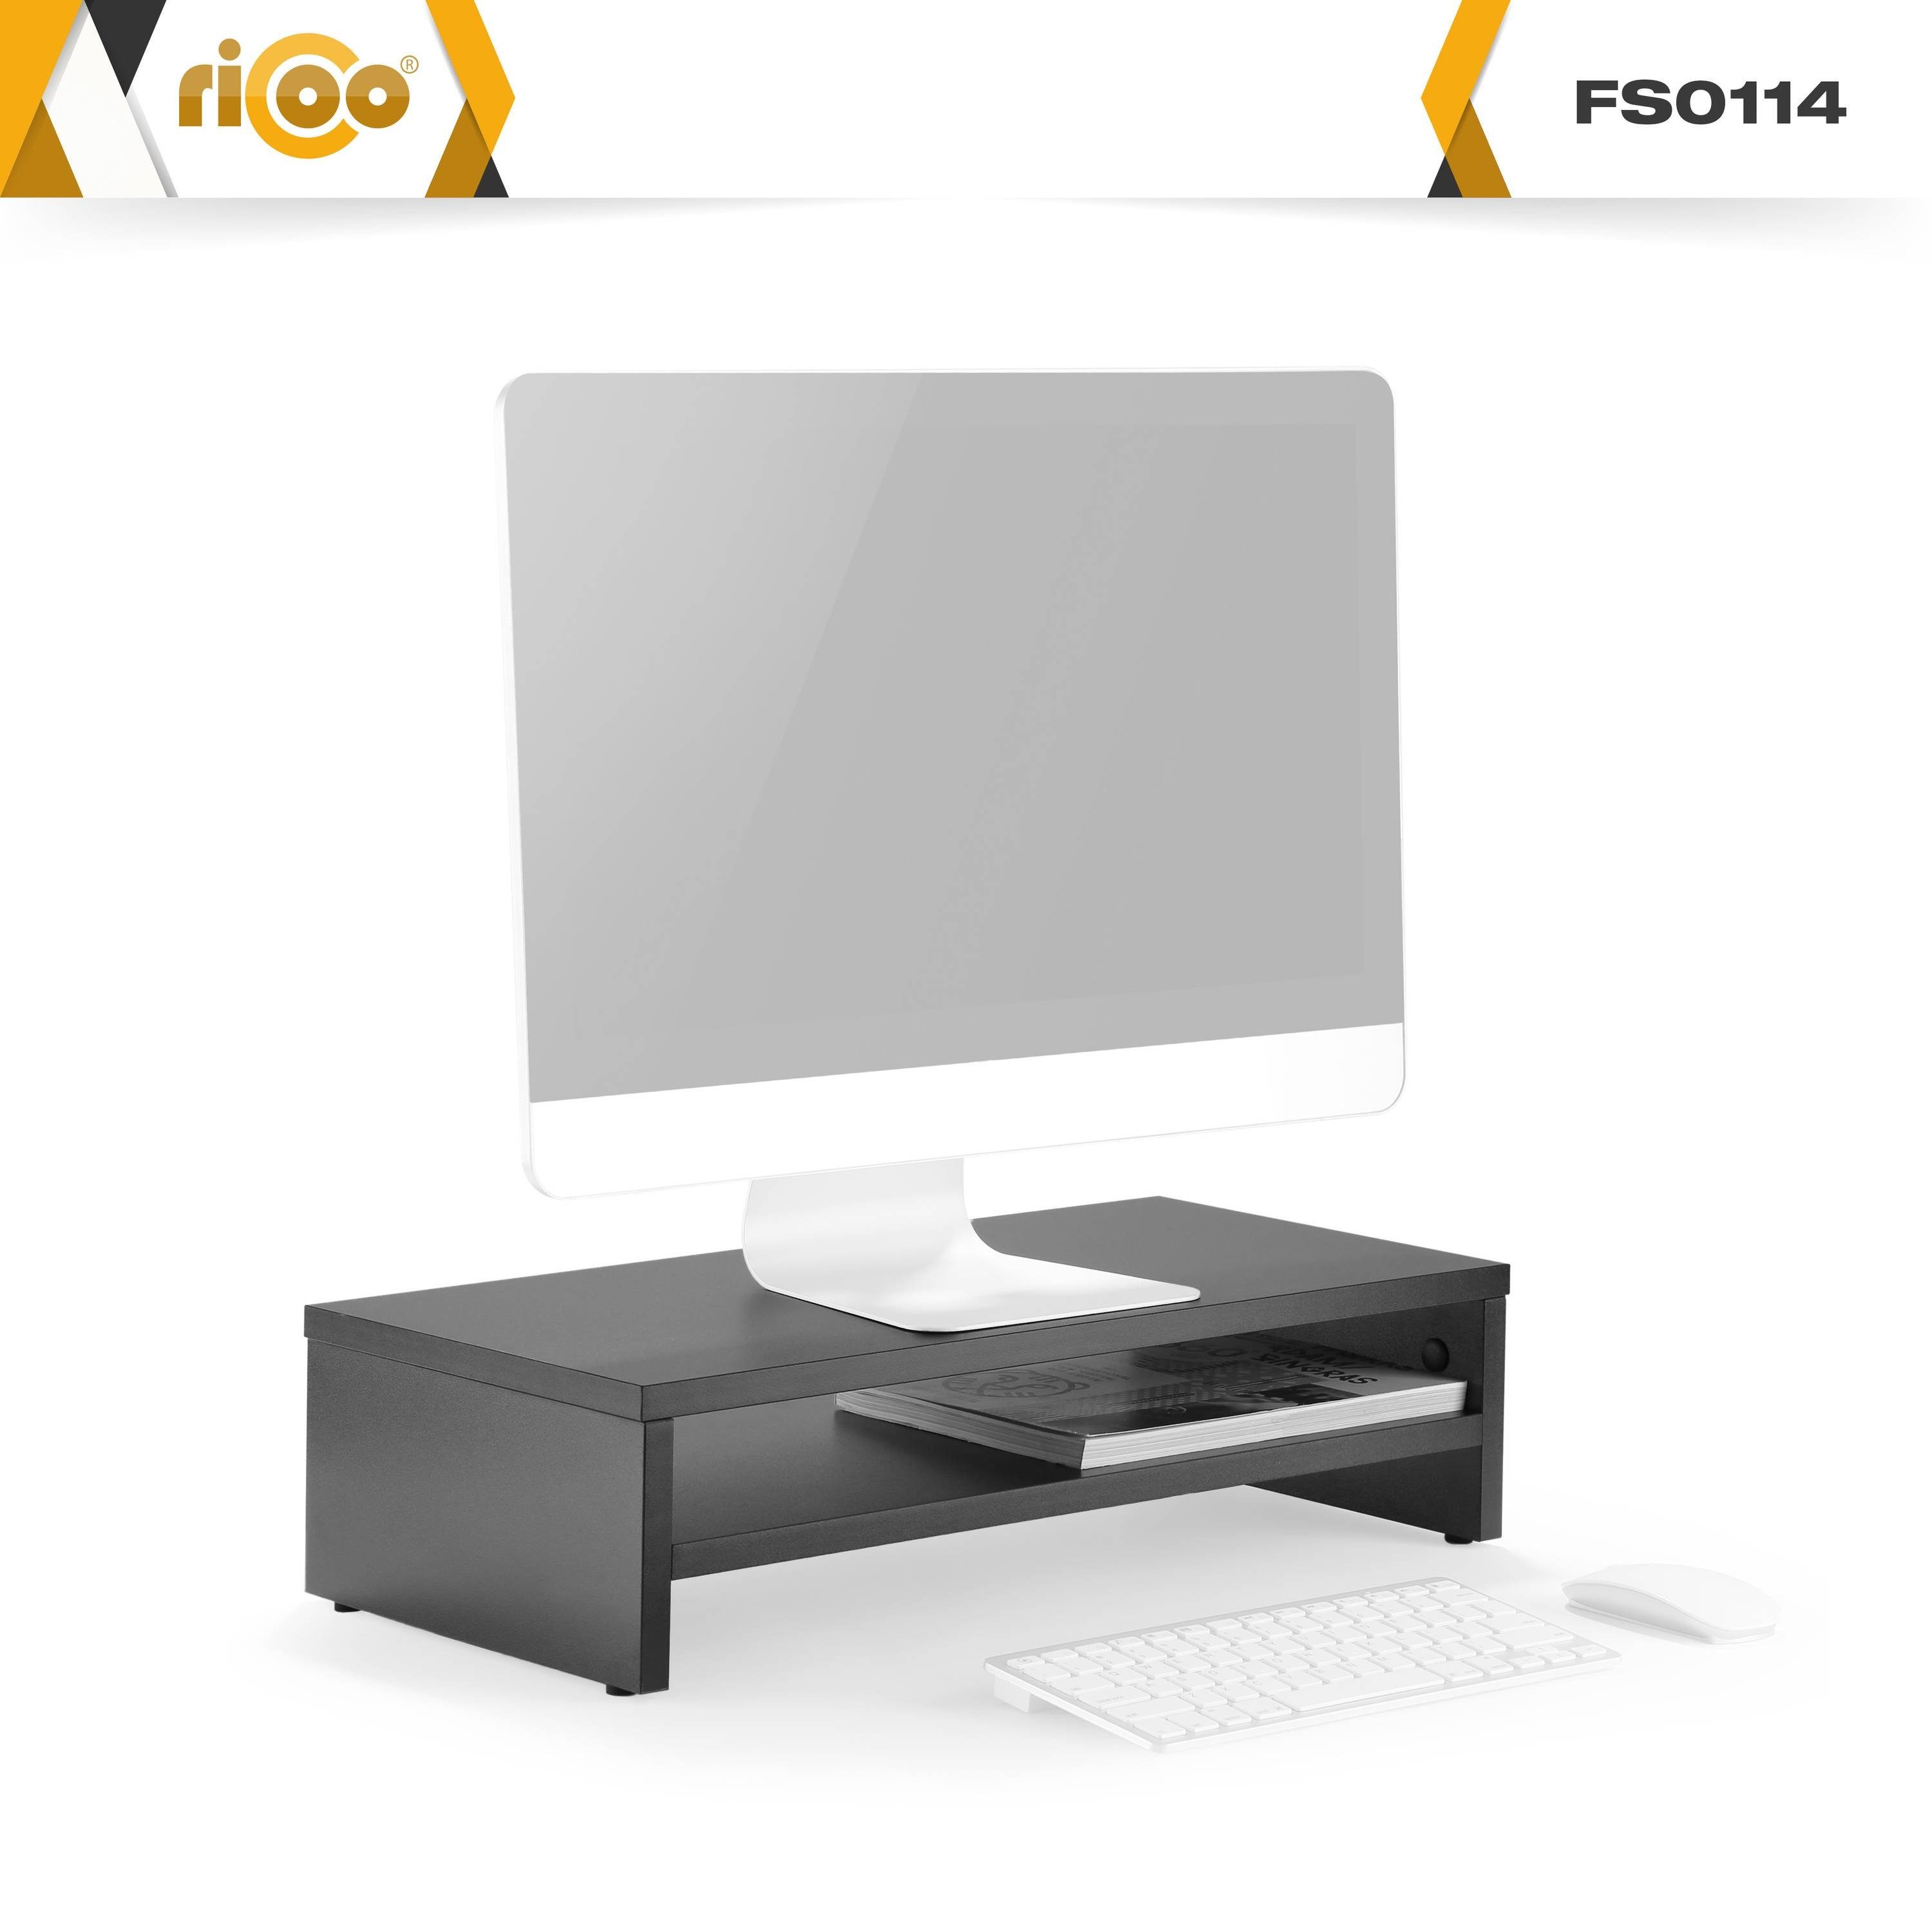 RICOO Monitorerhöhung Schreibtisch FS0114-S, Tisch Schwarz Monitorständer Bildschirm Schreibtischaufsatz Aufsatz